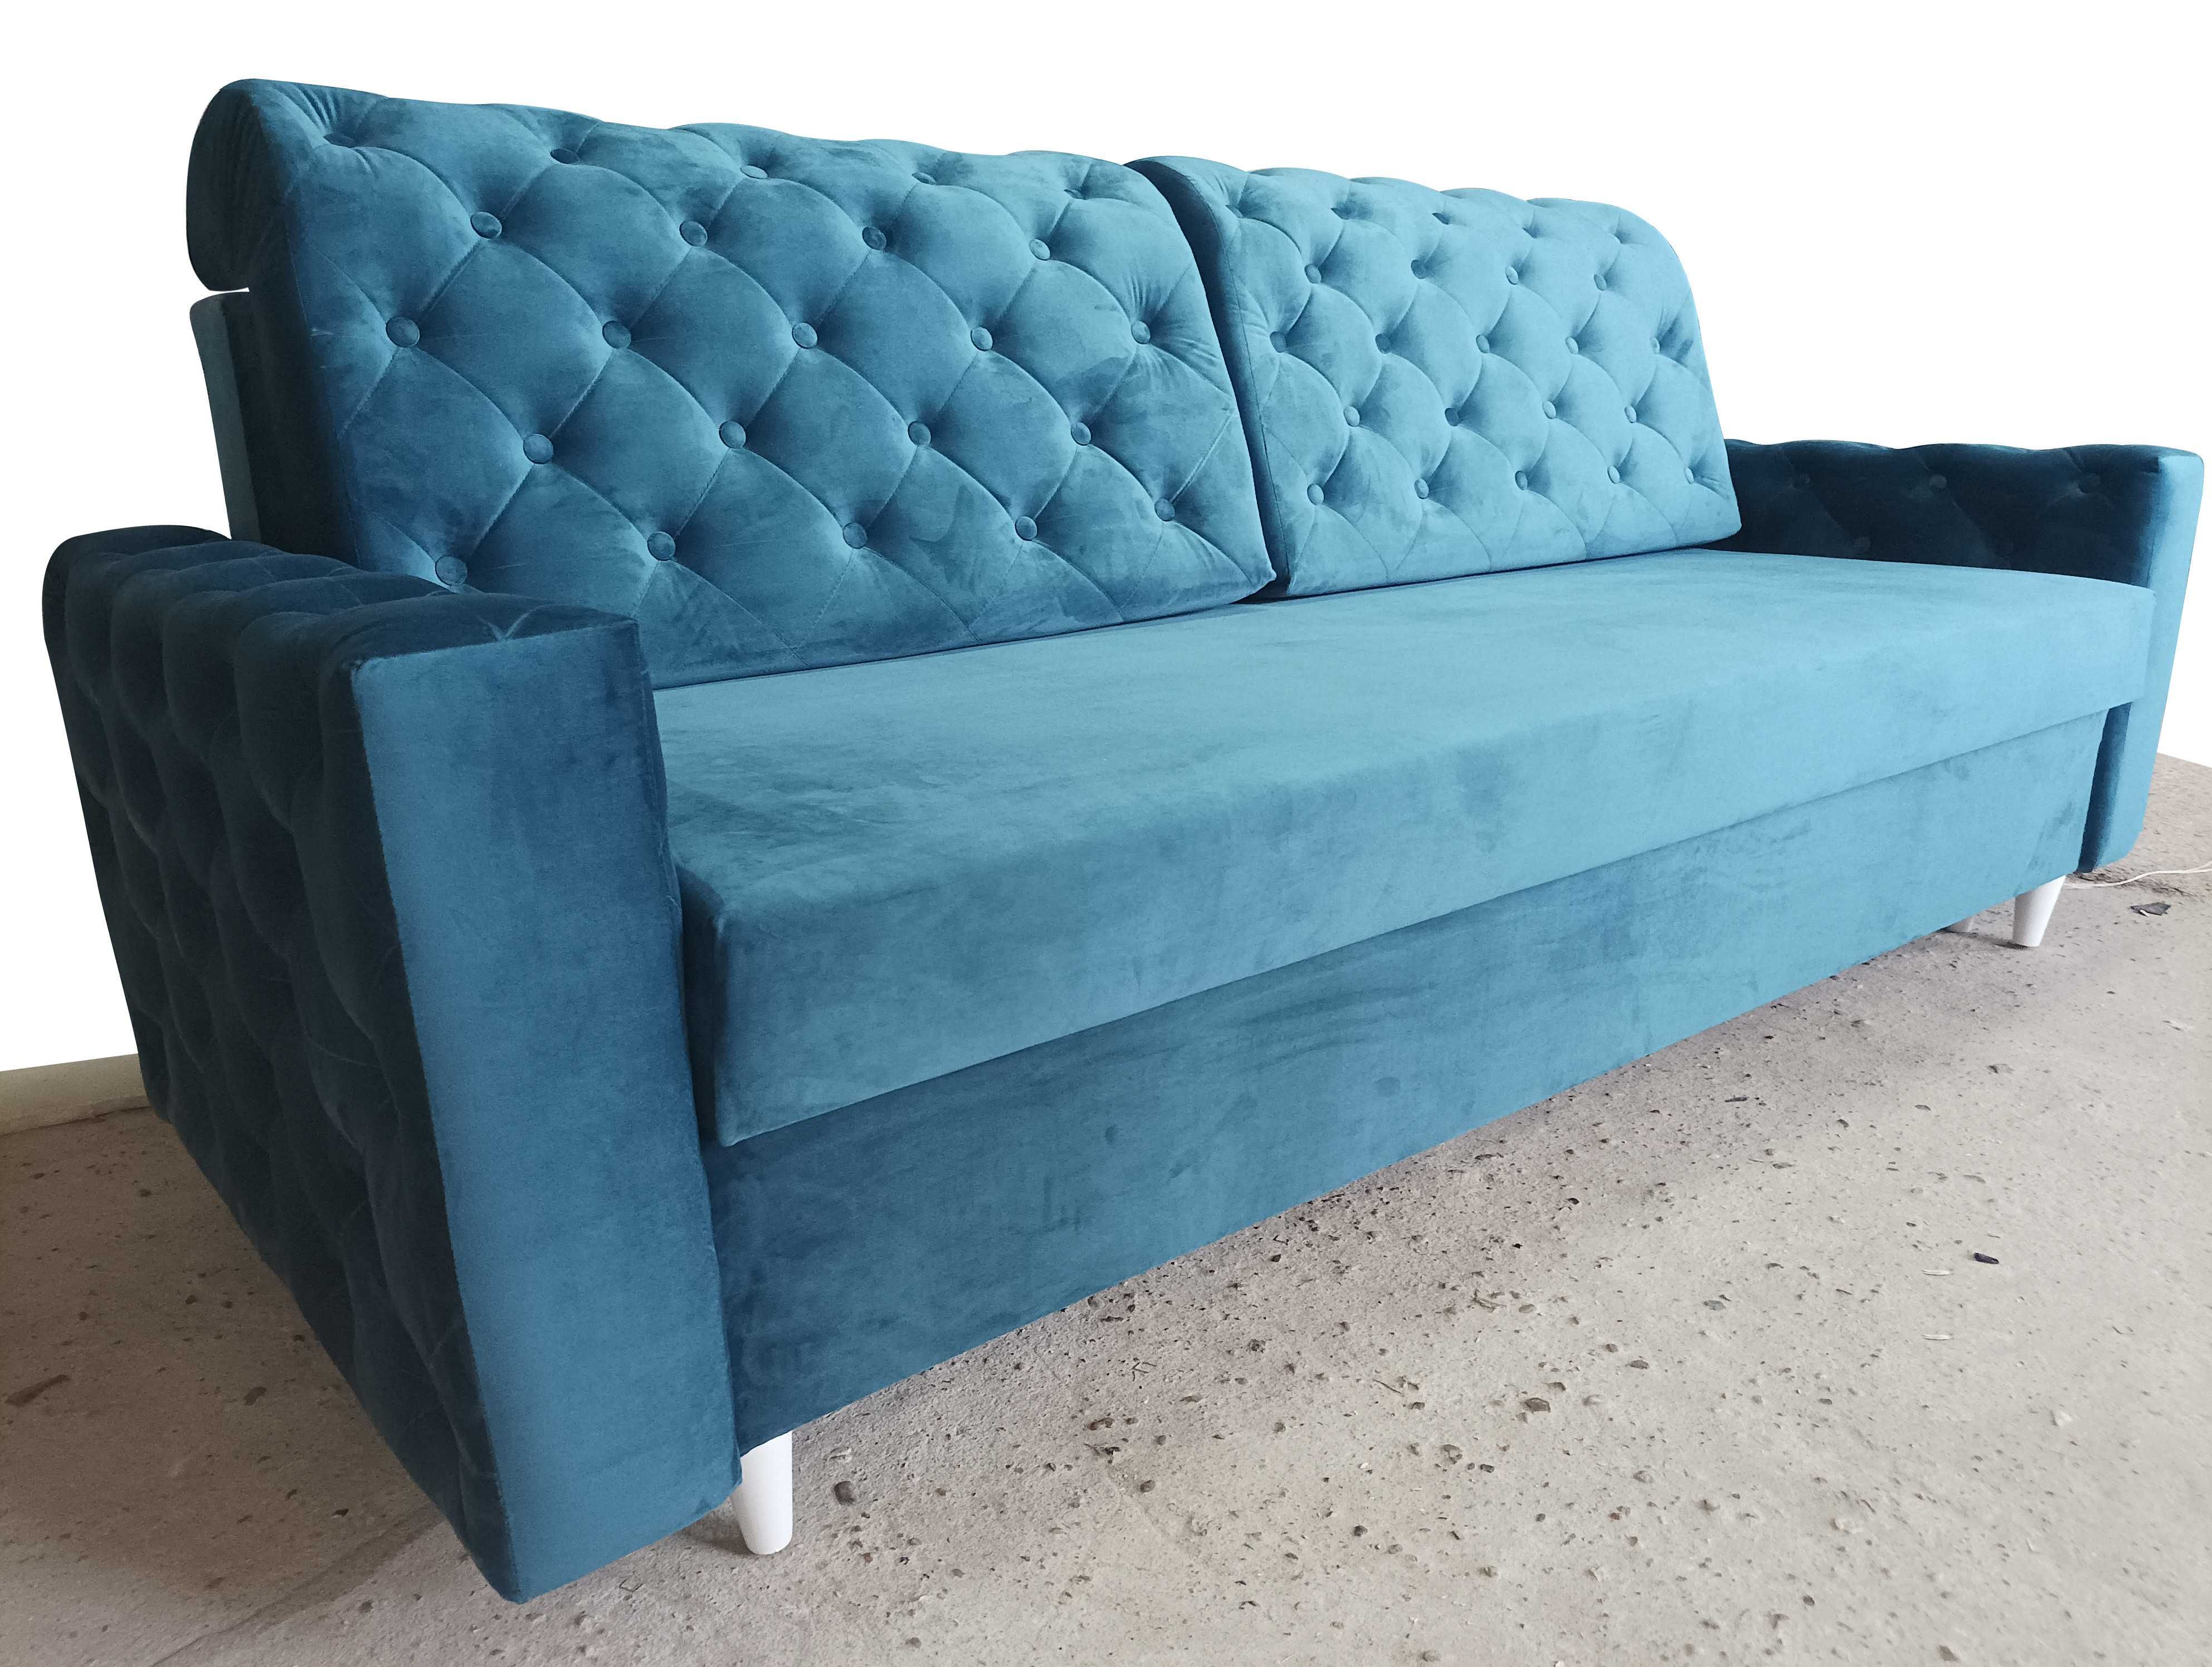 RATY NOWA! TANIO!  sofa Glamour kanapa rozkładana łóżko z pojemnikiem